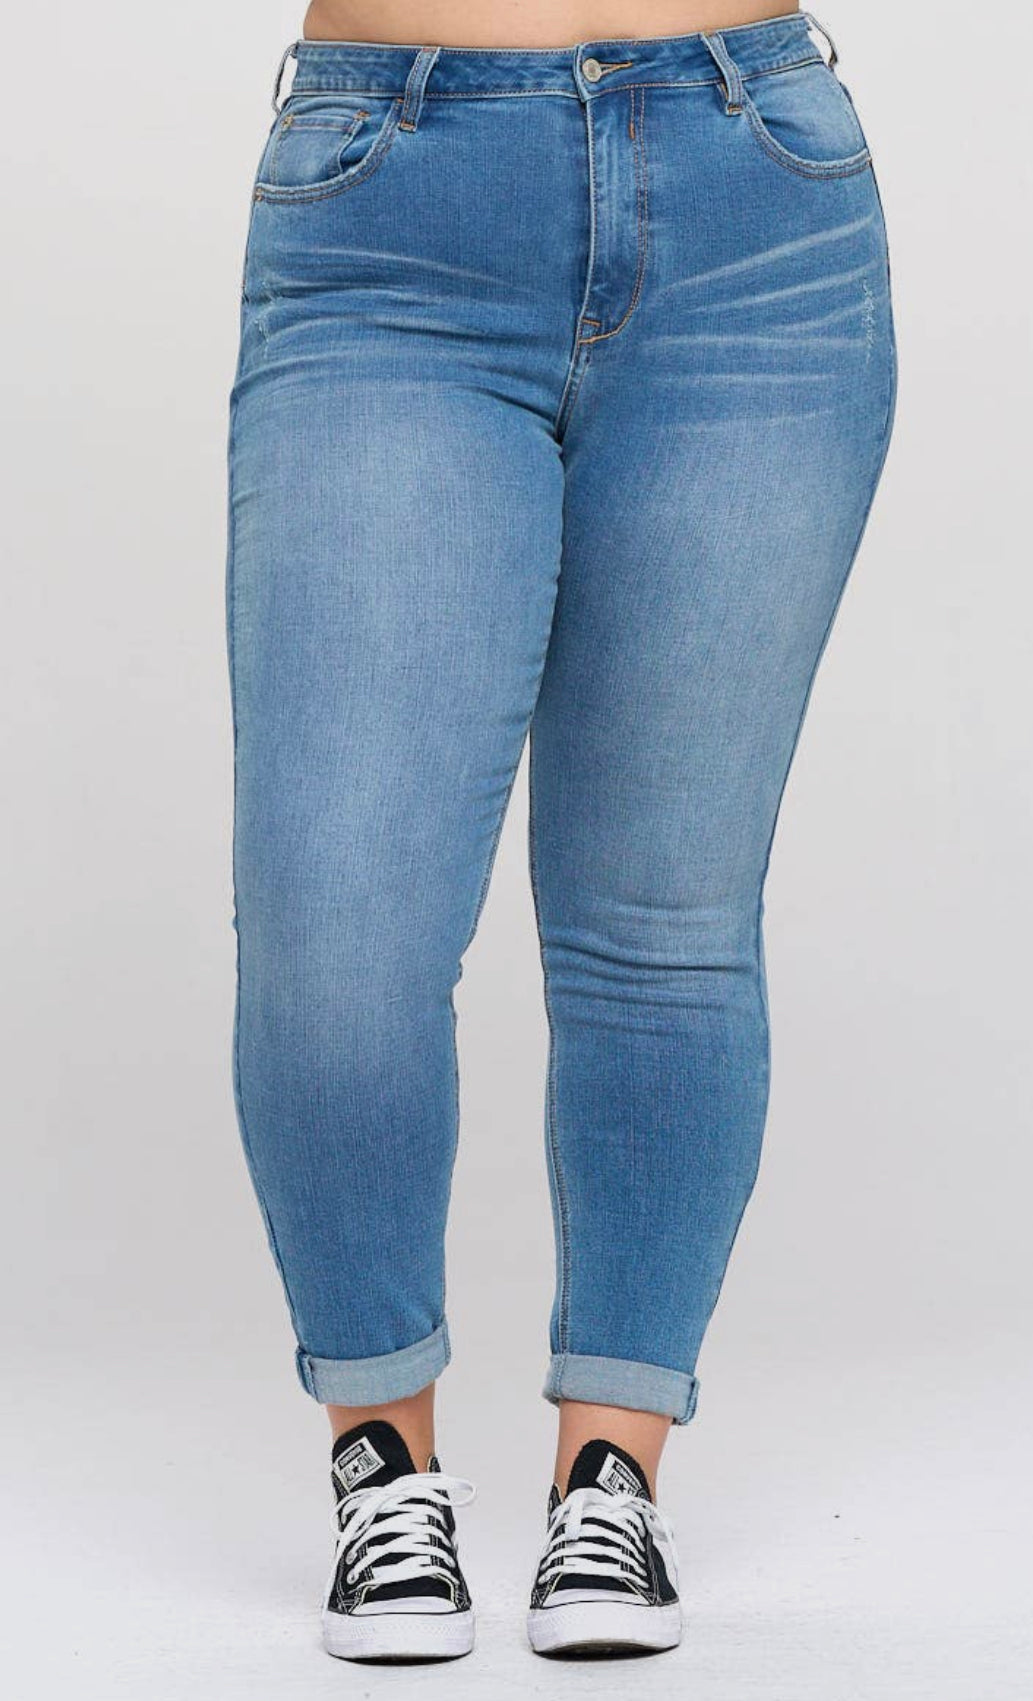 Amelia’s plus size skinny jeans